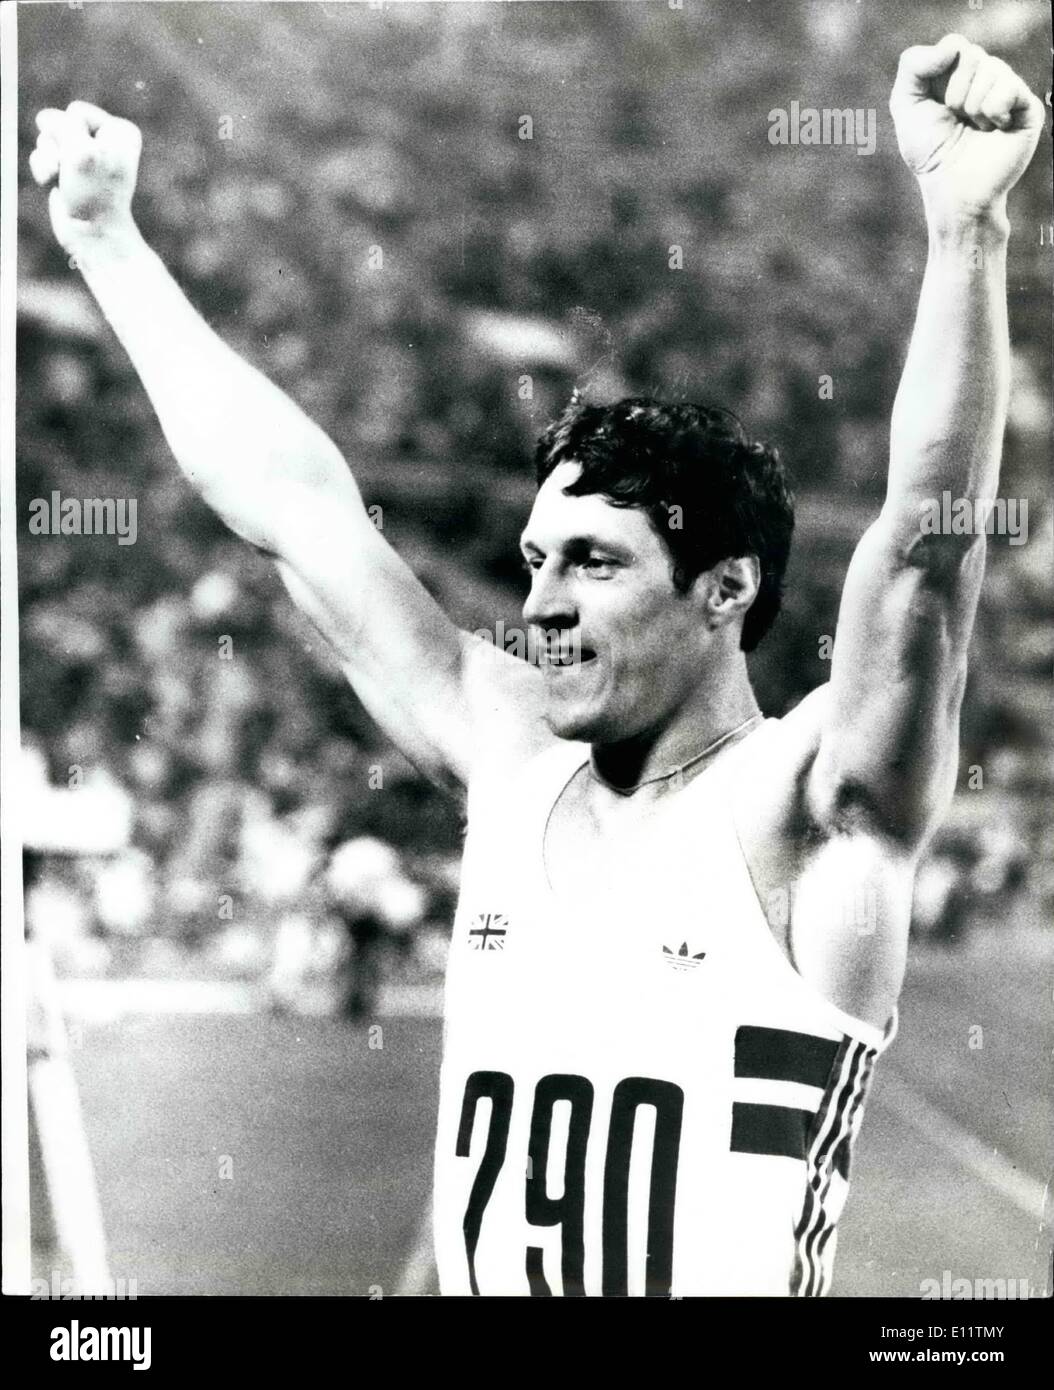 Juillet 07, 1980 - Jeux Olympiques de Moscou remporte le 100m Alan bien final ; La photo montre Alan mur avec les bras en l'air après avoir remporté la finale du 100 mètres en 10,25. Banque D'Images